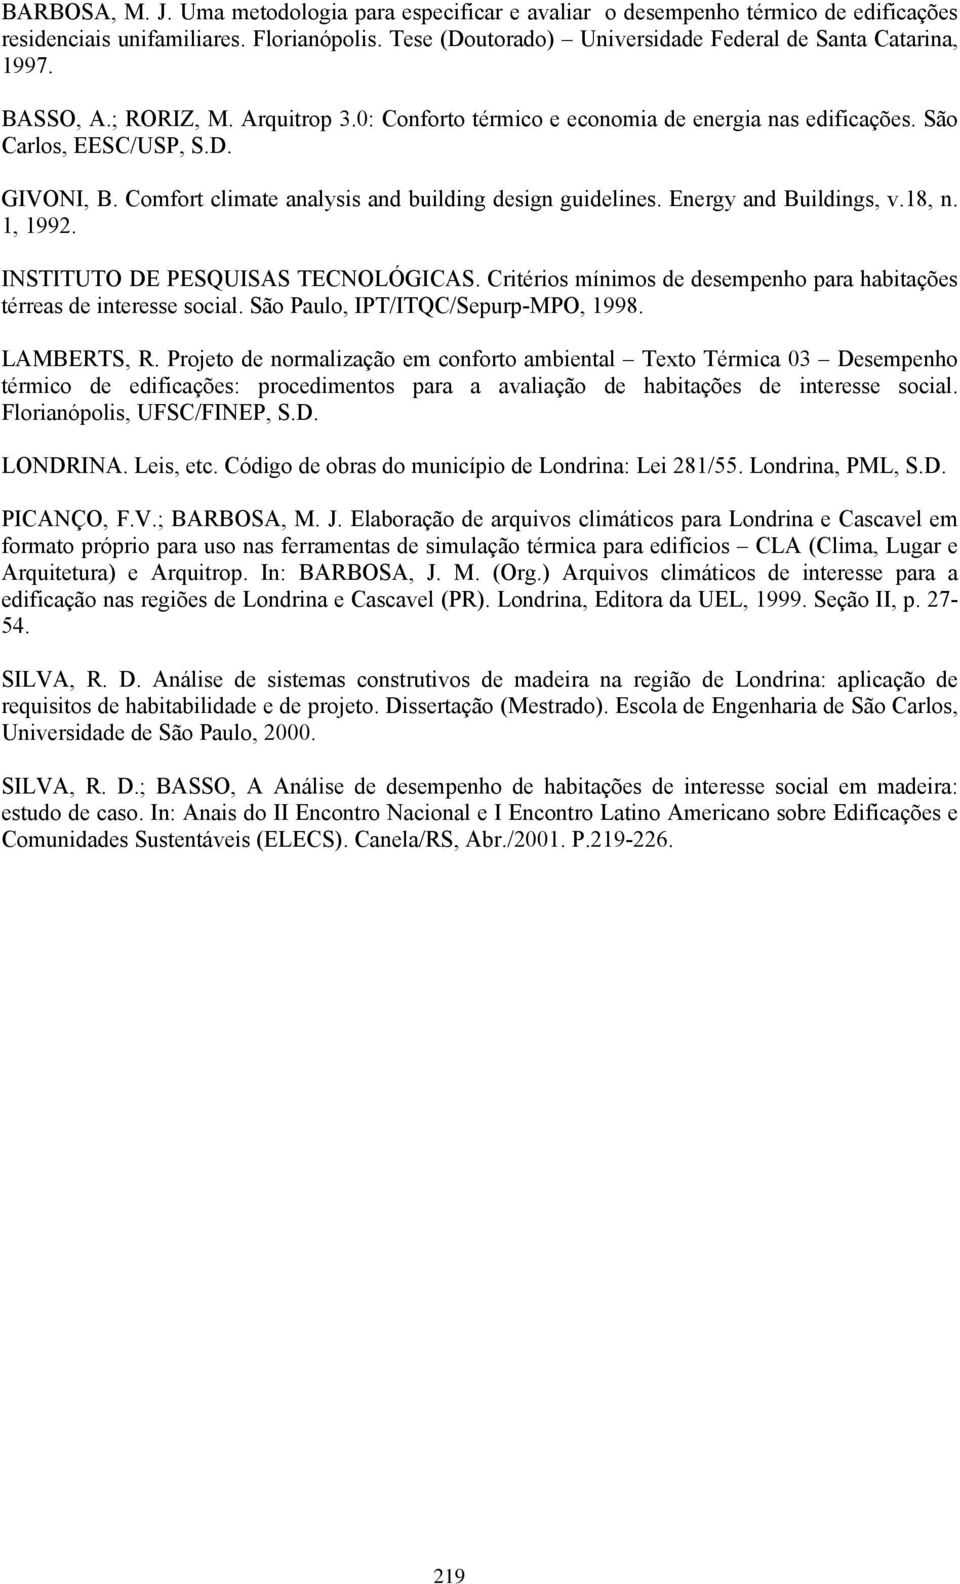 Energy and Buildings, v.18, n. 1, 199. INSTITUTO DE PESQUISAS TECNOLÓGICAS. Critérios mínimos de desempenho para habitações térreas de interesse social. São Paulo, IPT/ITQC/Sepurp-MPO, 1998.